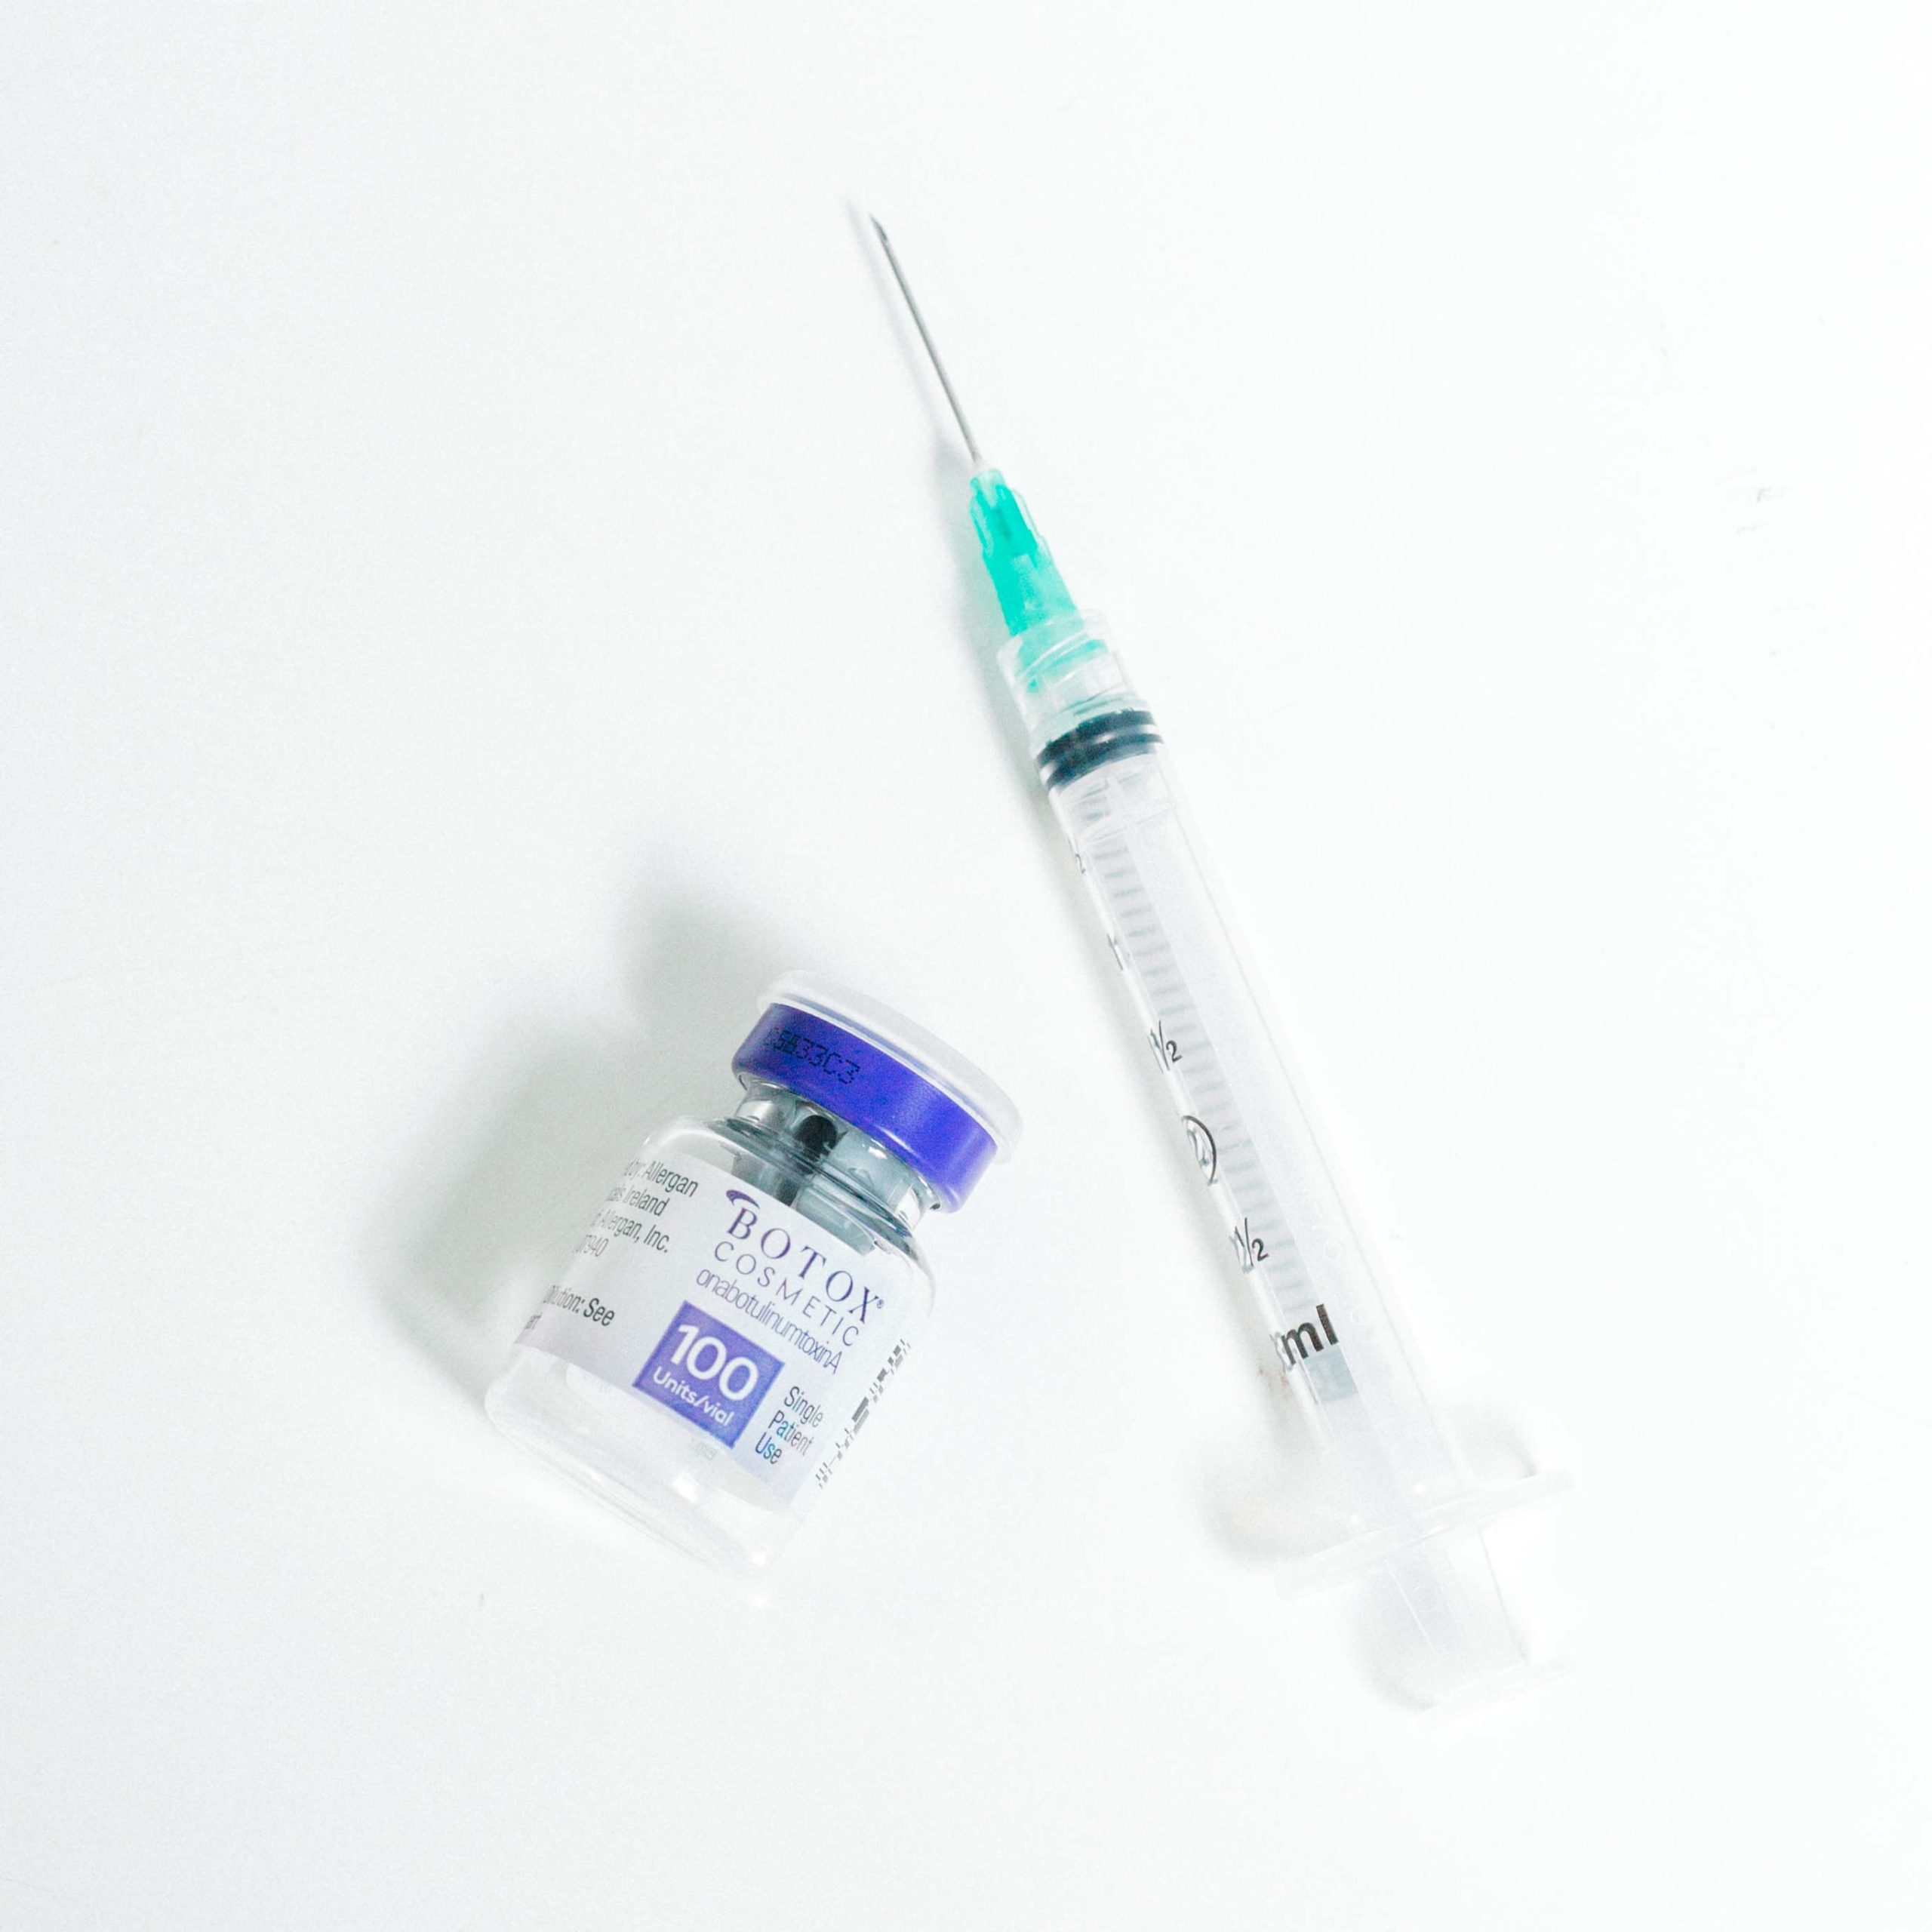 botox vial and needle